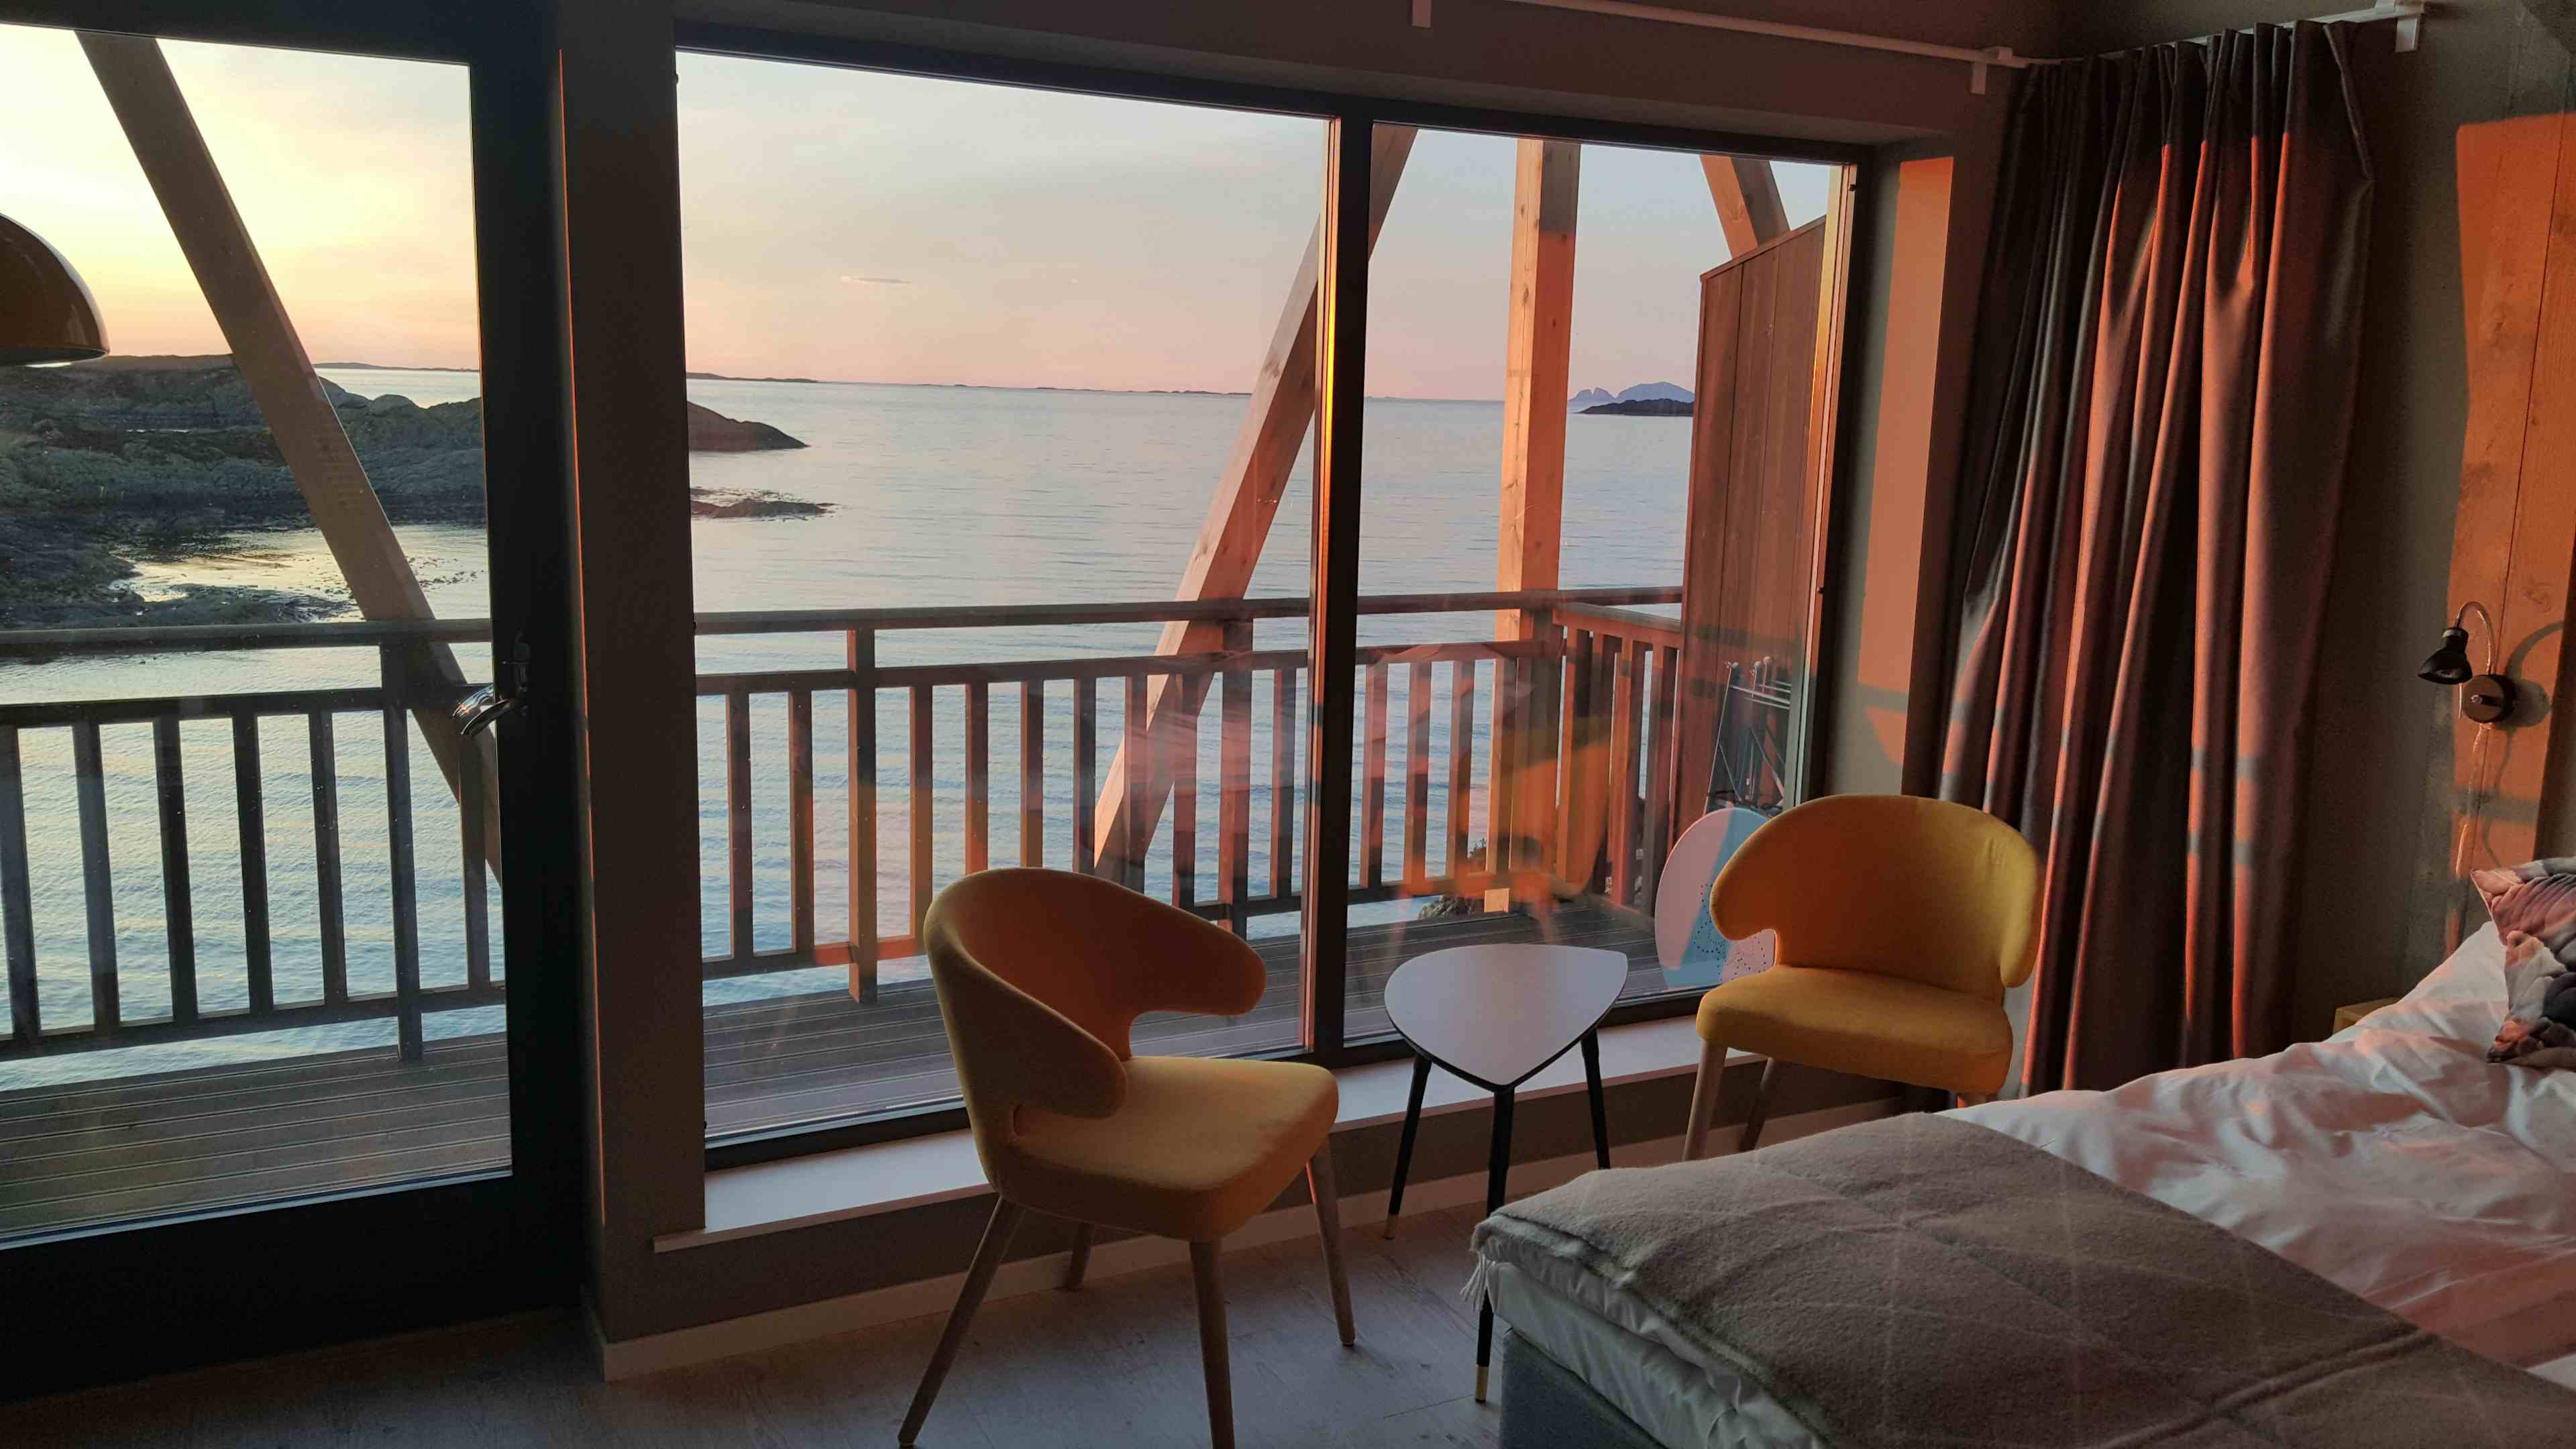 Velkomen til Værlandet havhotell - eit hotell heilt i havgapet